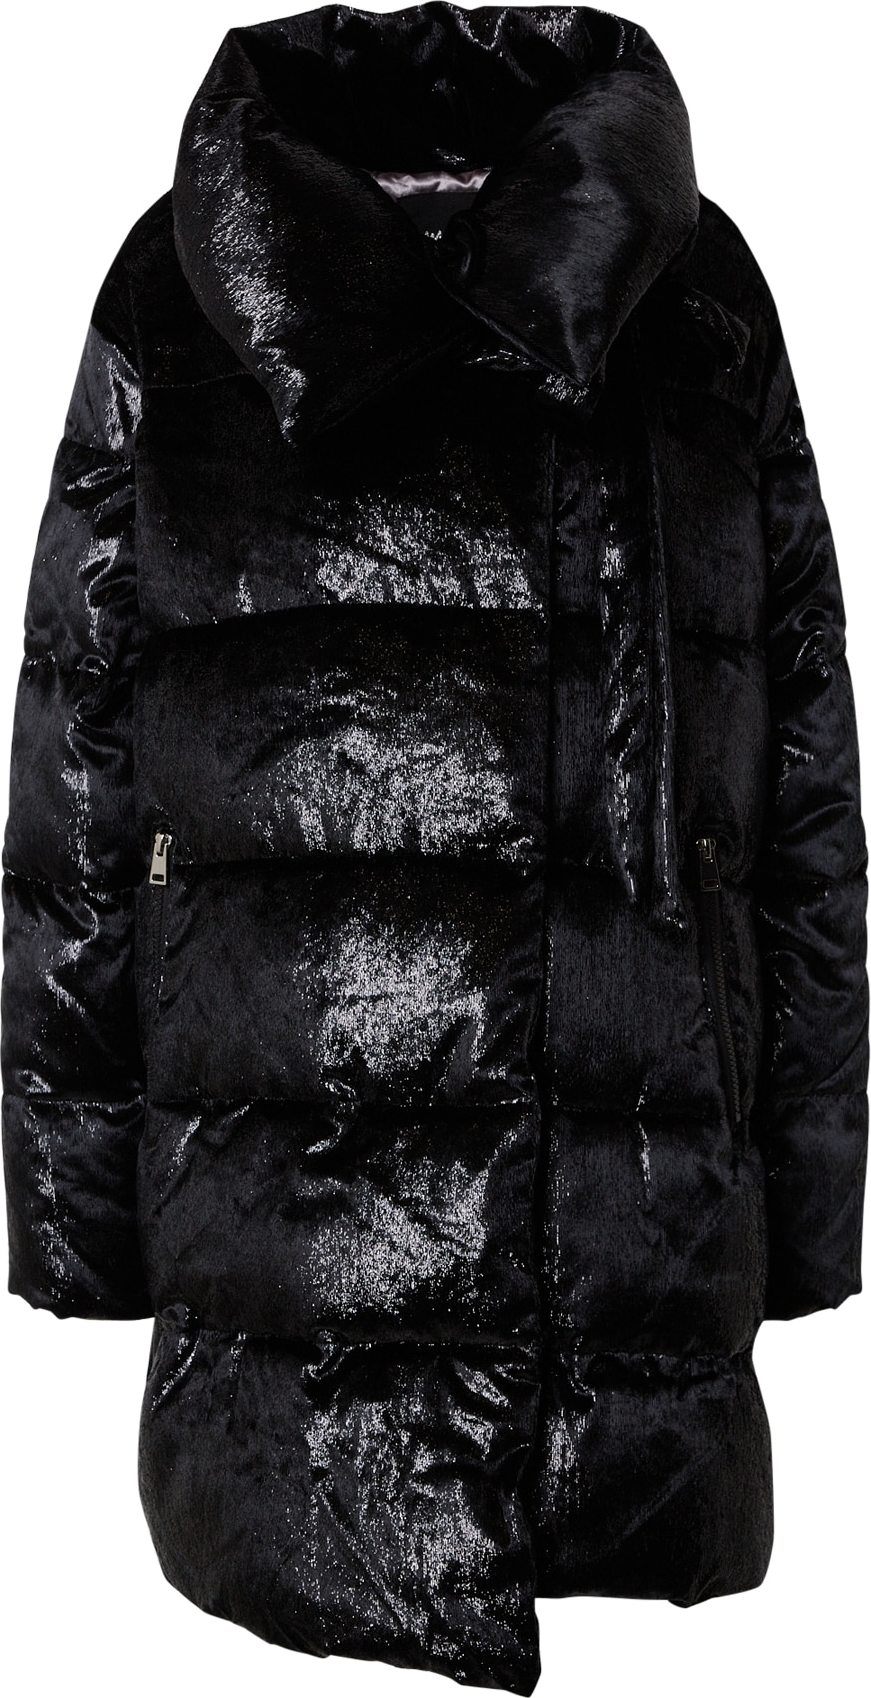 Zimní bunda 'Bromela' Maze černá